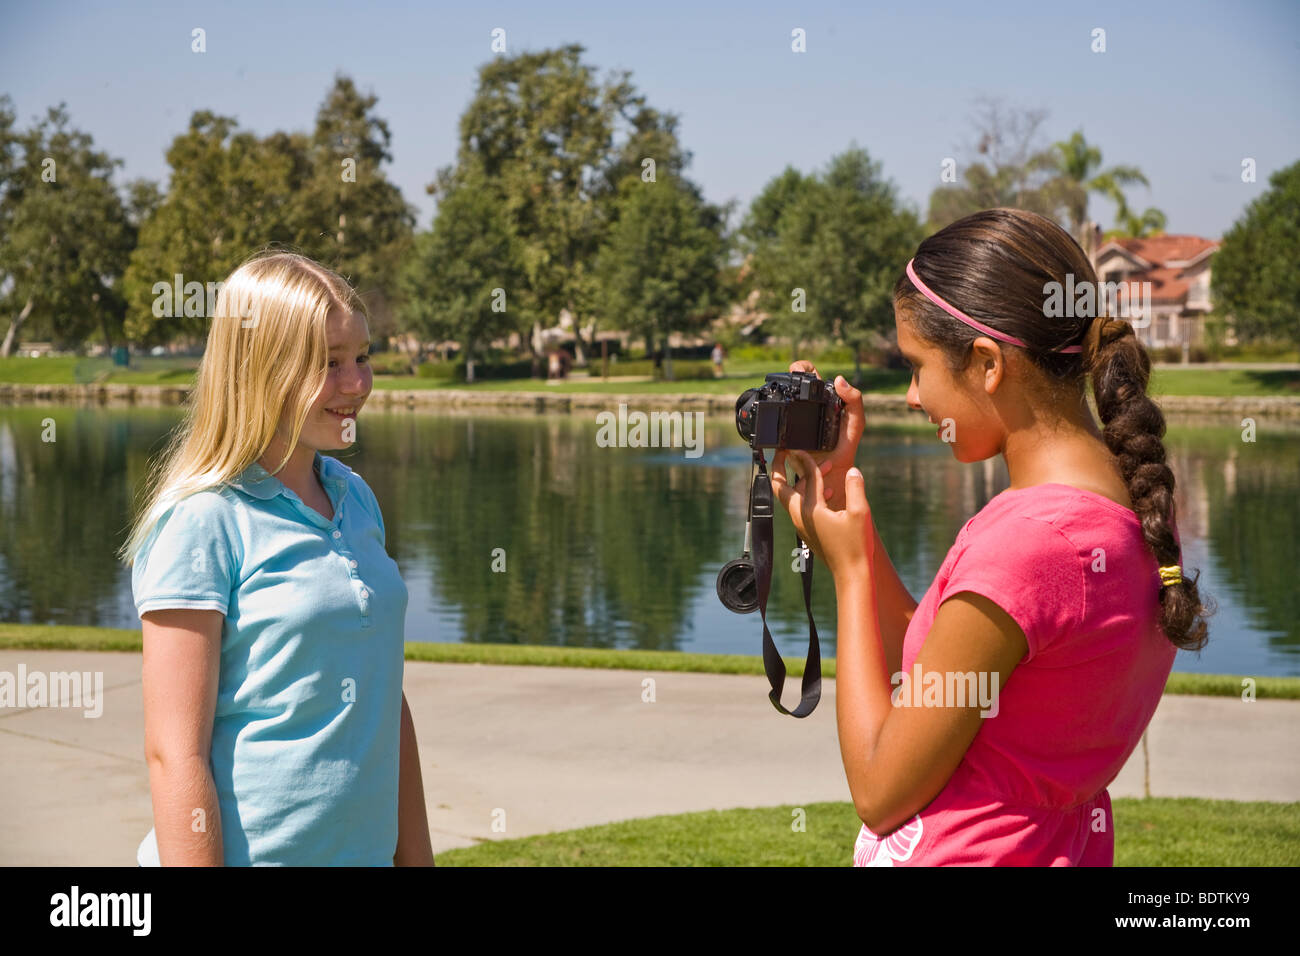 Dos chicas de 11-12 años y años colgando Hispanic junior high niña toma la foto amigo caucásico.La gente joven de la naturaleza, un entorno natural Myrleen Pearson Foto de stock